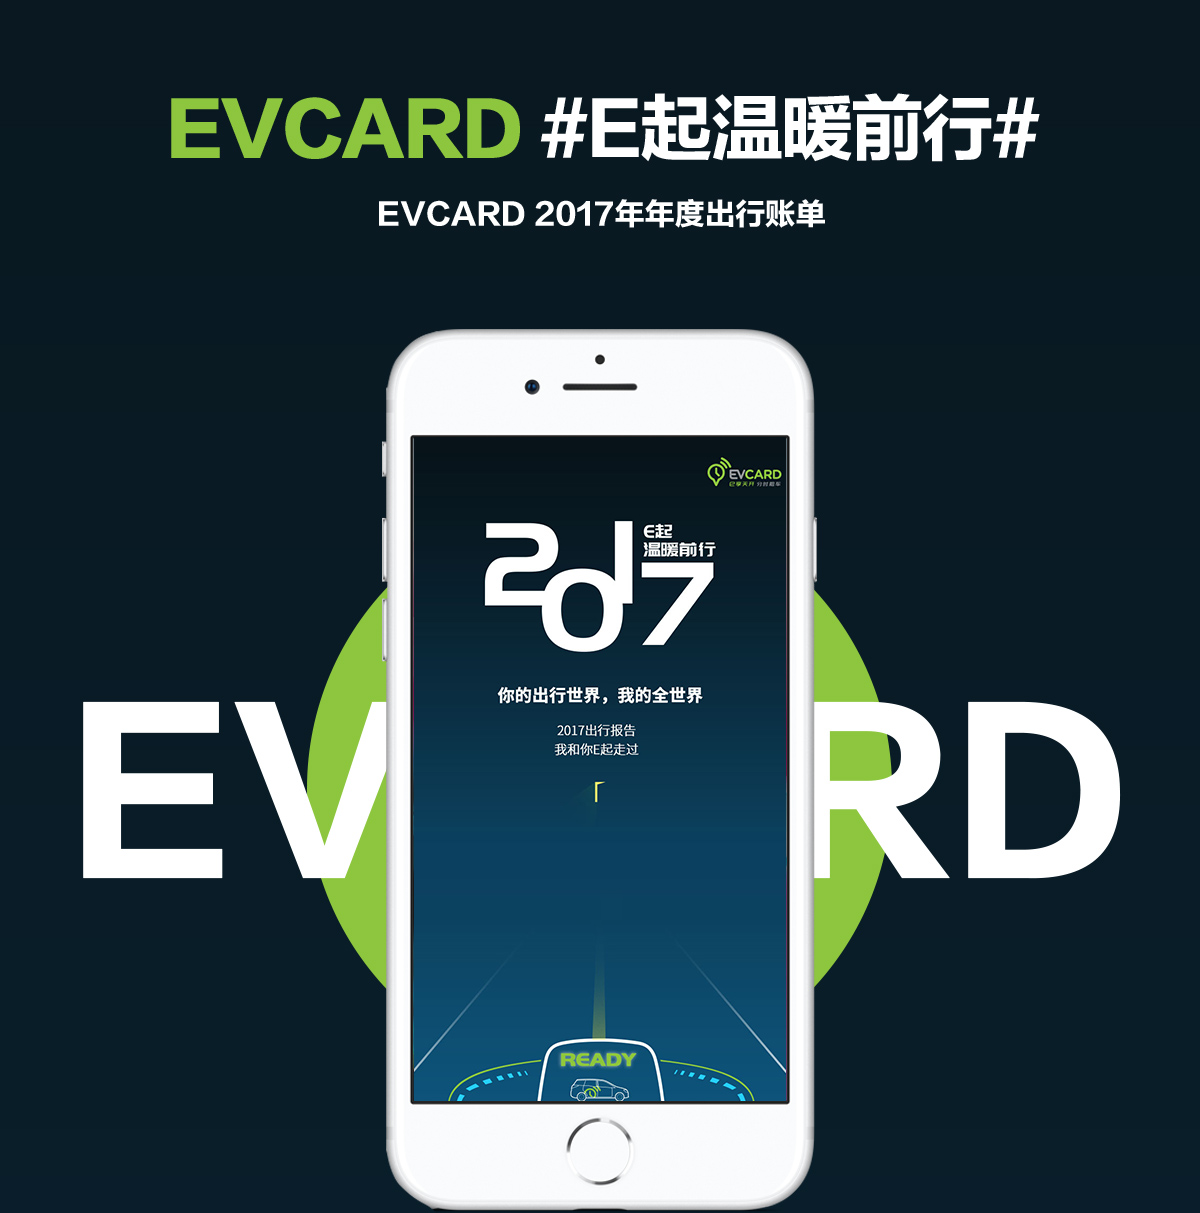 EVCARD新媒体运营-2017#E起温暖前行#-新媒体营销,新媒体广告公司,上海网络营销,微信代运营,高端网站建设,网站建设公司